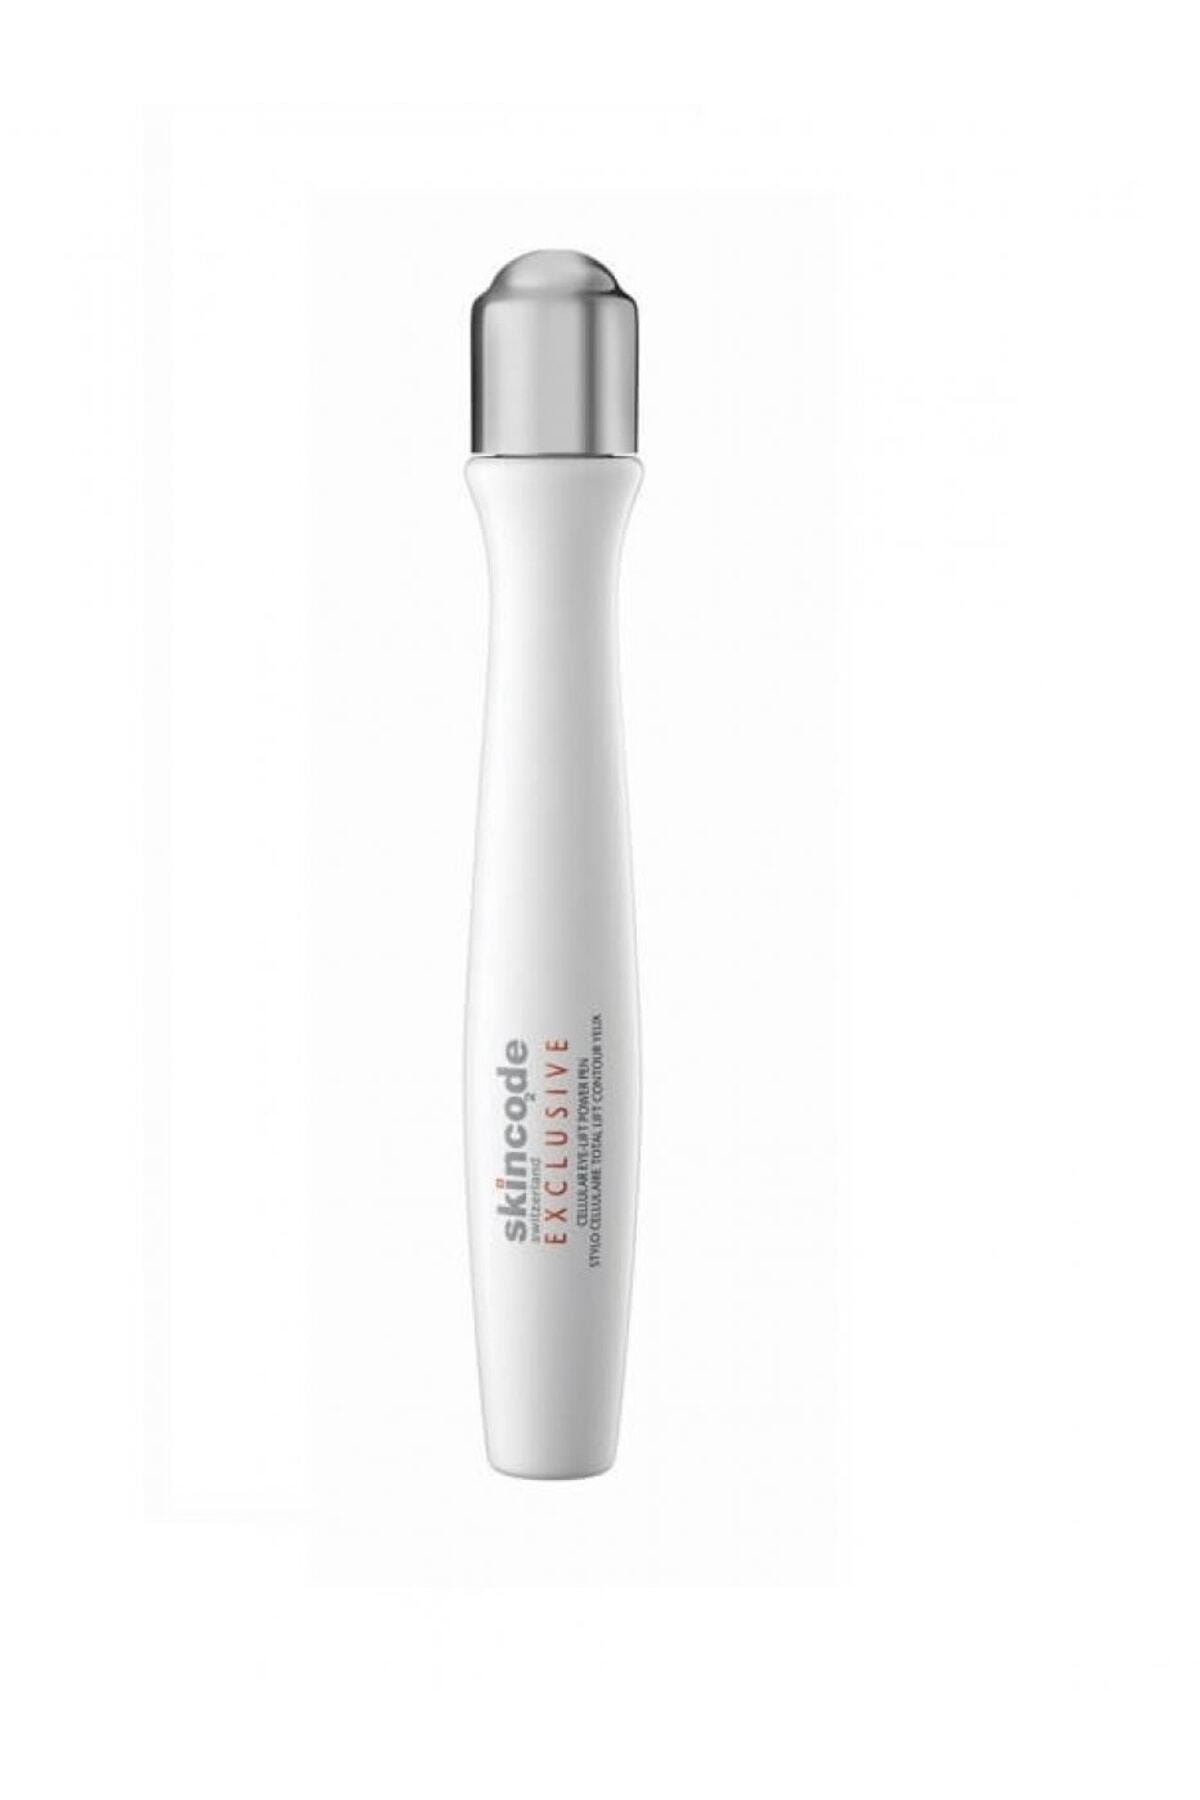 Skincode Göz Çevresi Için Özel Hücre Canlandıran Roll-on - Cellular Eye-lift Power Pen 15 ml